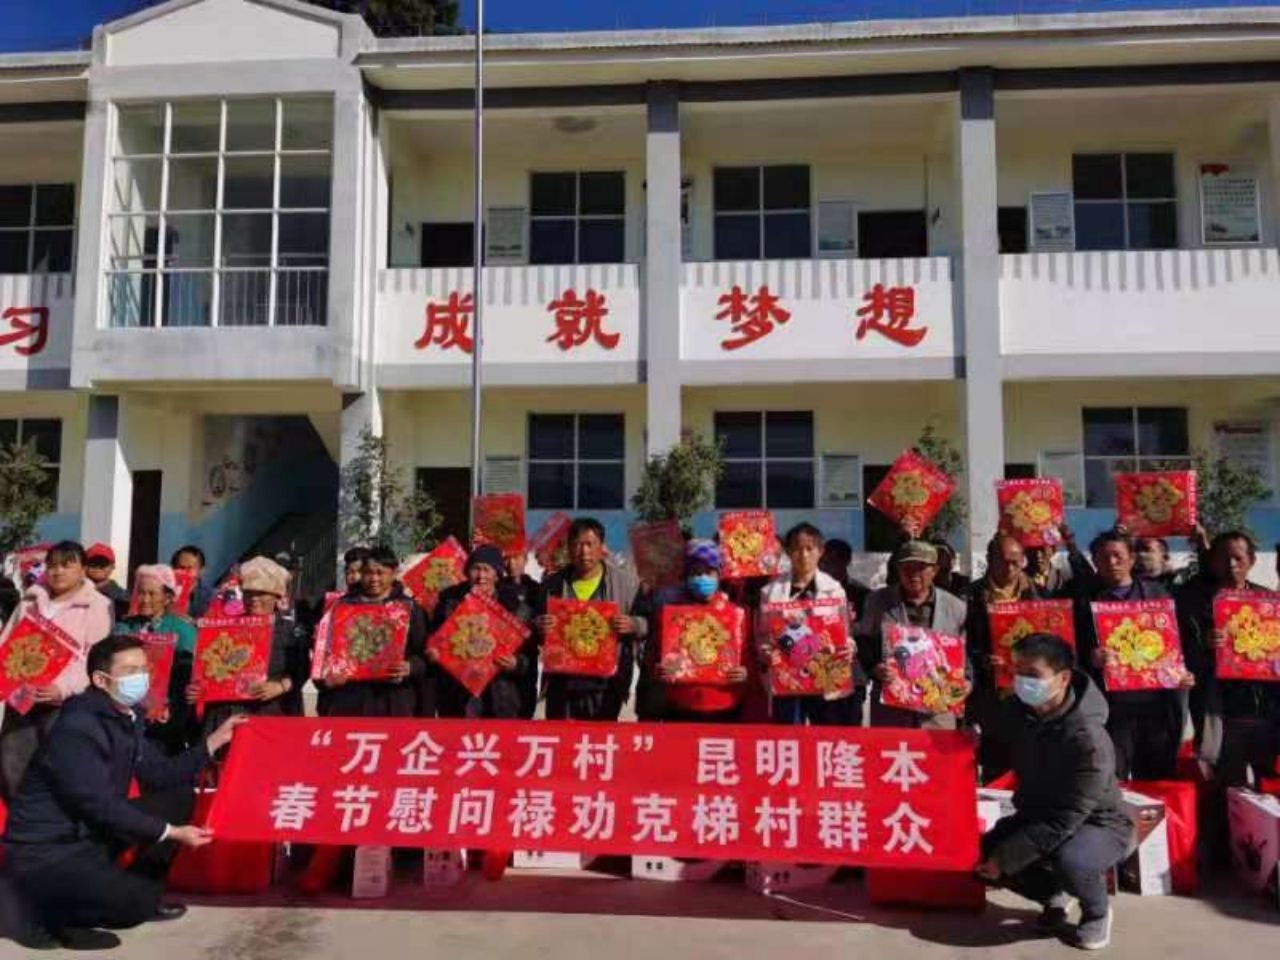 公司参加市委统战部组织的“万企兴万村”春节慰问活动